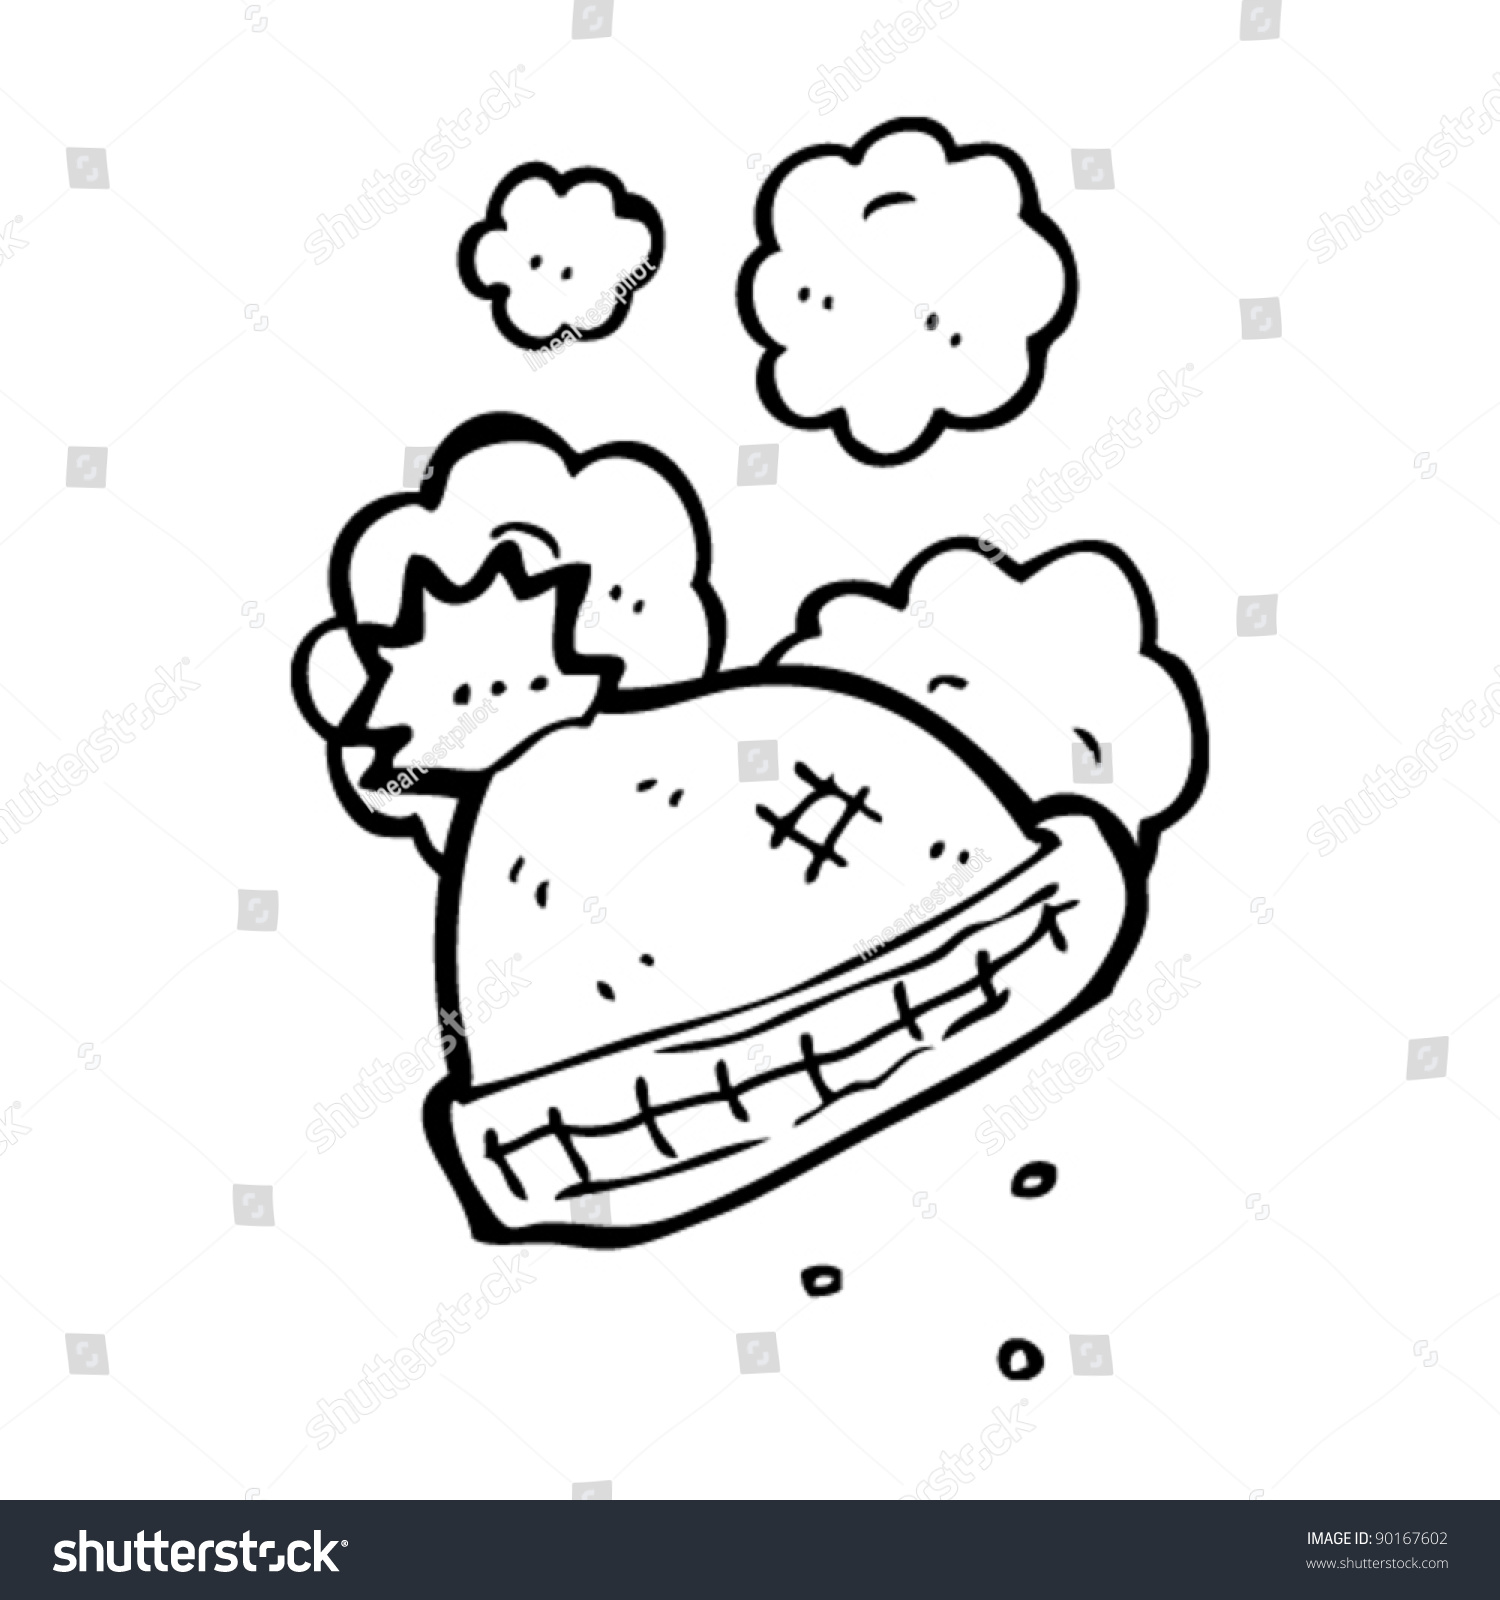 Winter Hat Cartoon Stock Vector Illustration 90167602 : Shutterstock